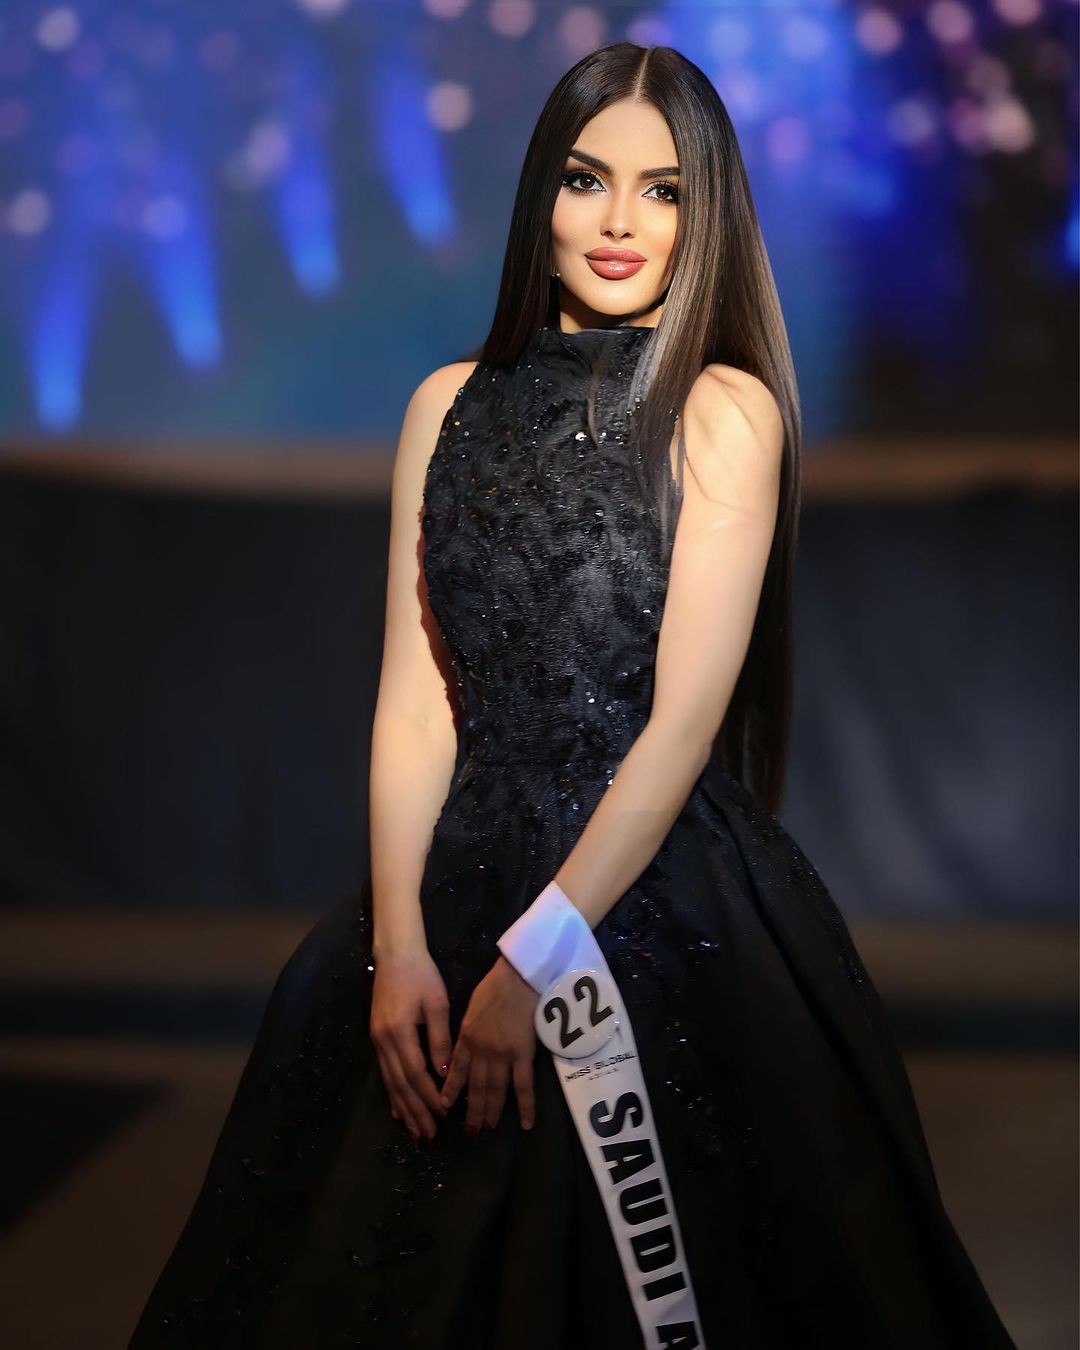 Nhan sắc gây tranh cãi của người đẹp Saudi Arabia đầu tiên thi Hoa hậu Hoàn vũ ảnh 12